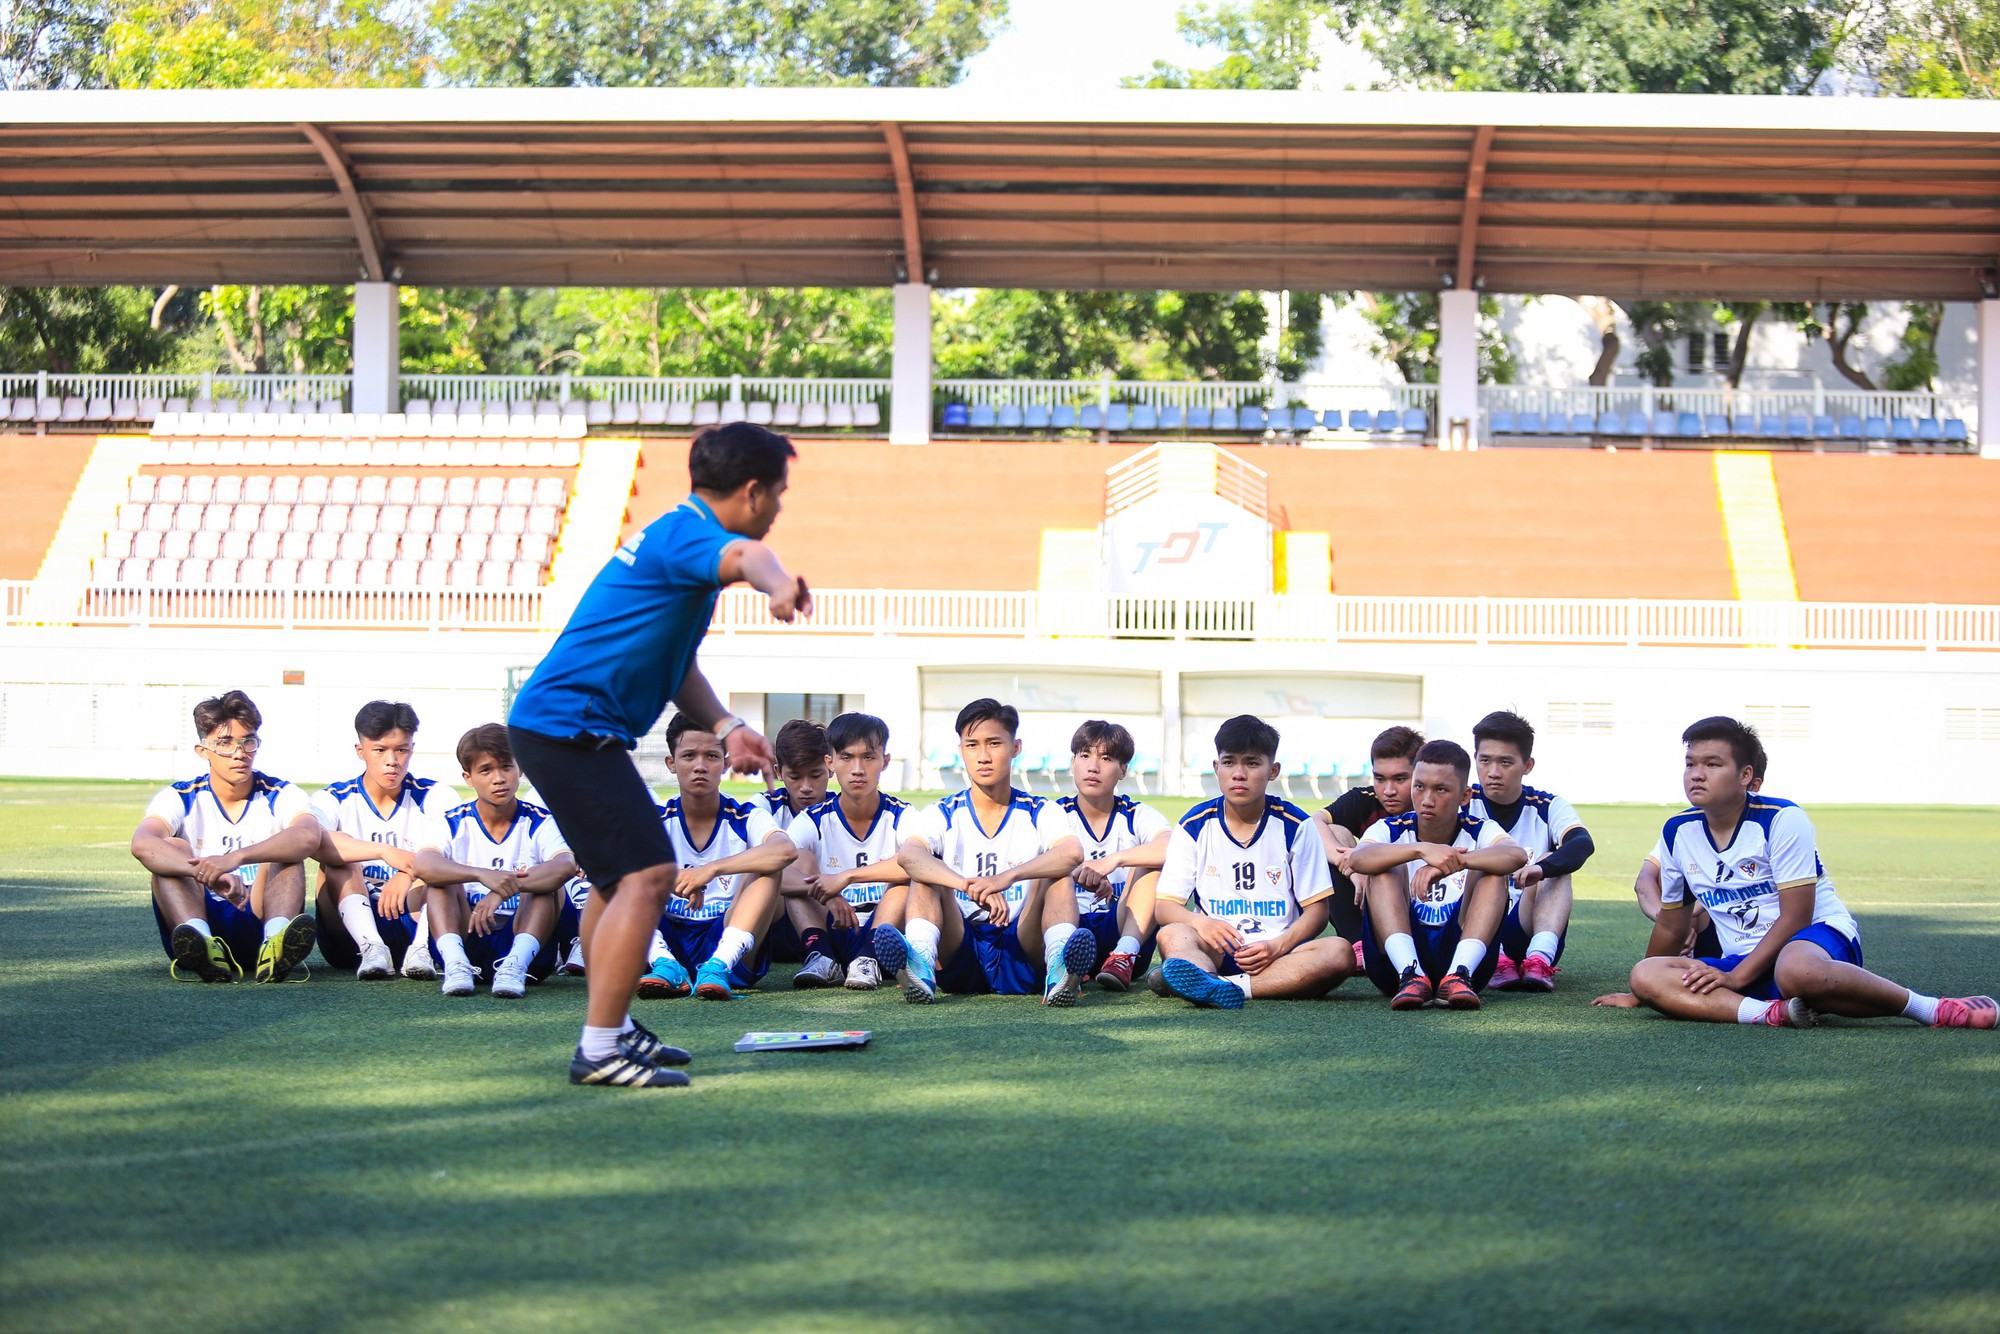 HLV đội ĐH Quốc tế Hồng Bàng nói lý do trò chuyện cầu thủ gần 20 phút - Ảnh 1.